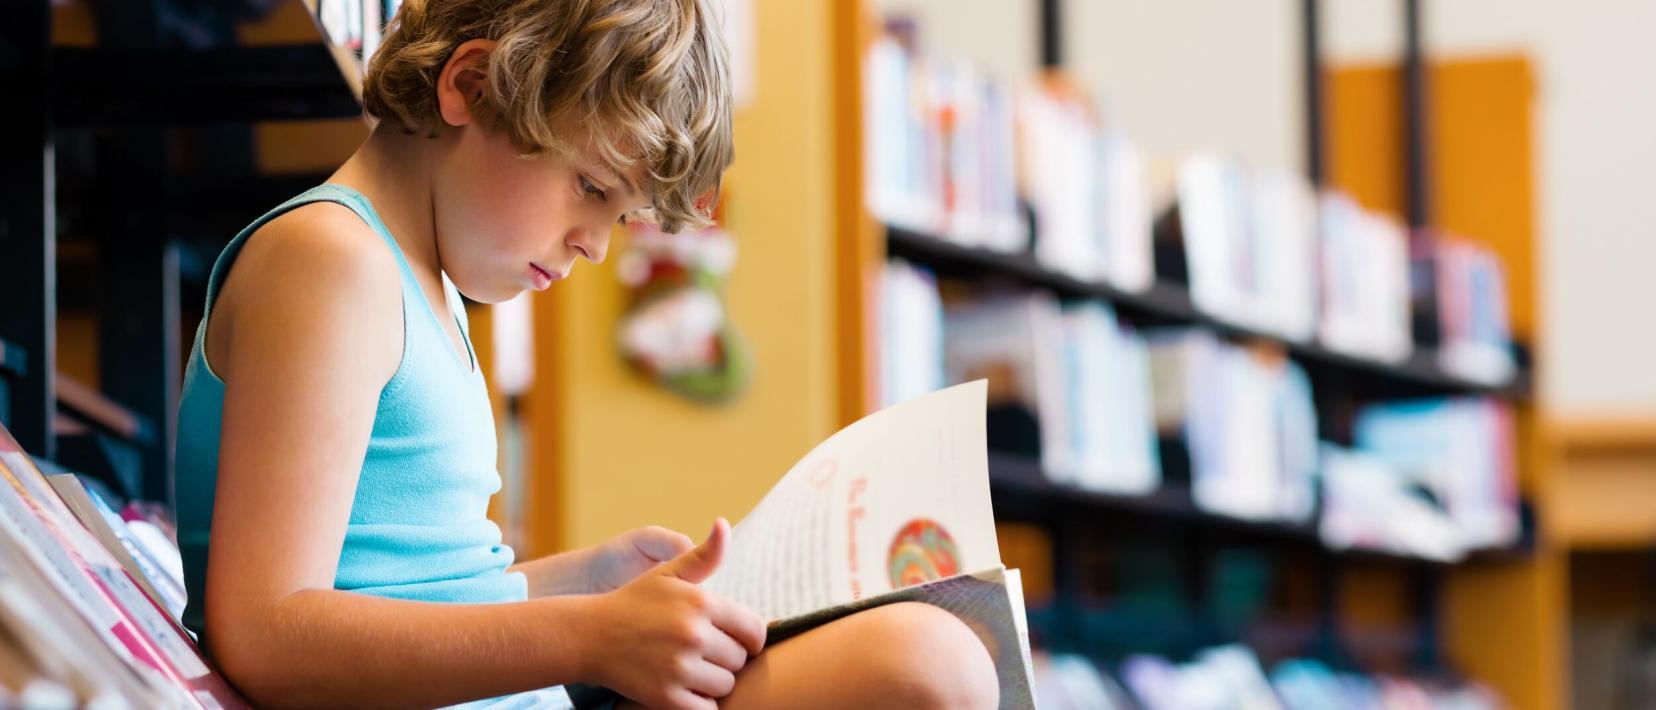 Ein Junge sitzt in einer Bibliothek vor einem Bücherregal und blättert in einem Buch.